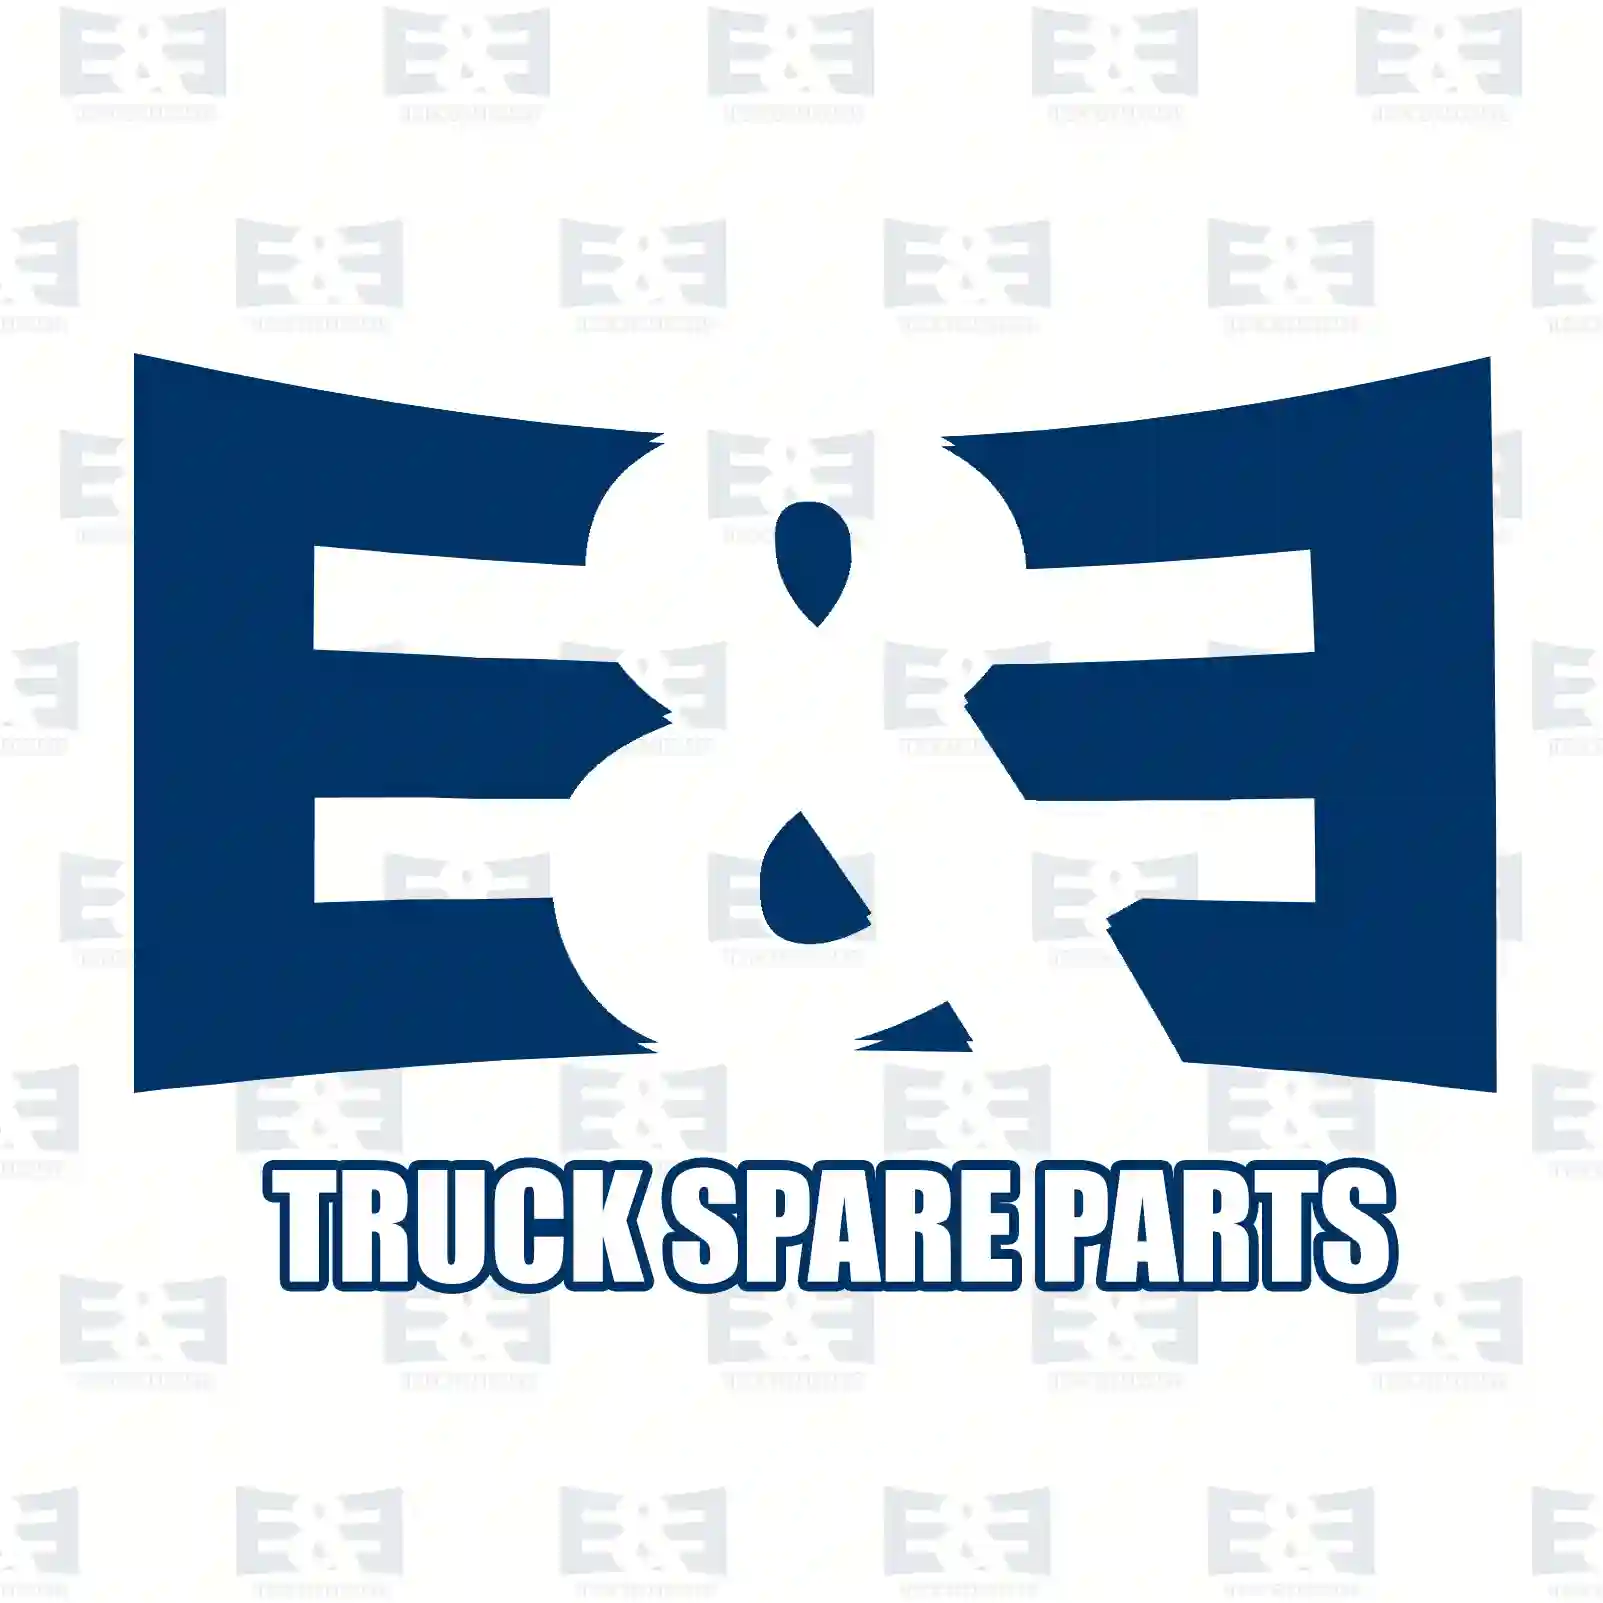 Repair kit, foot brake valve, 2E2295433, 4303506, 00258687 ||  2E2295433 E&E Truck Spare Parts | Truck Spare Parts, Auotomotive Spare Parts Repair kit, foot brake valve, 2E2295433, 4303506, 00258687 ||  2E2295433 E&E Truck Spare Parts | Truck Spare Parts, Auotomotive Spare Parts